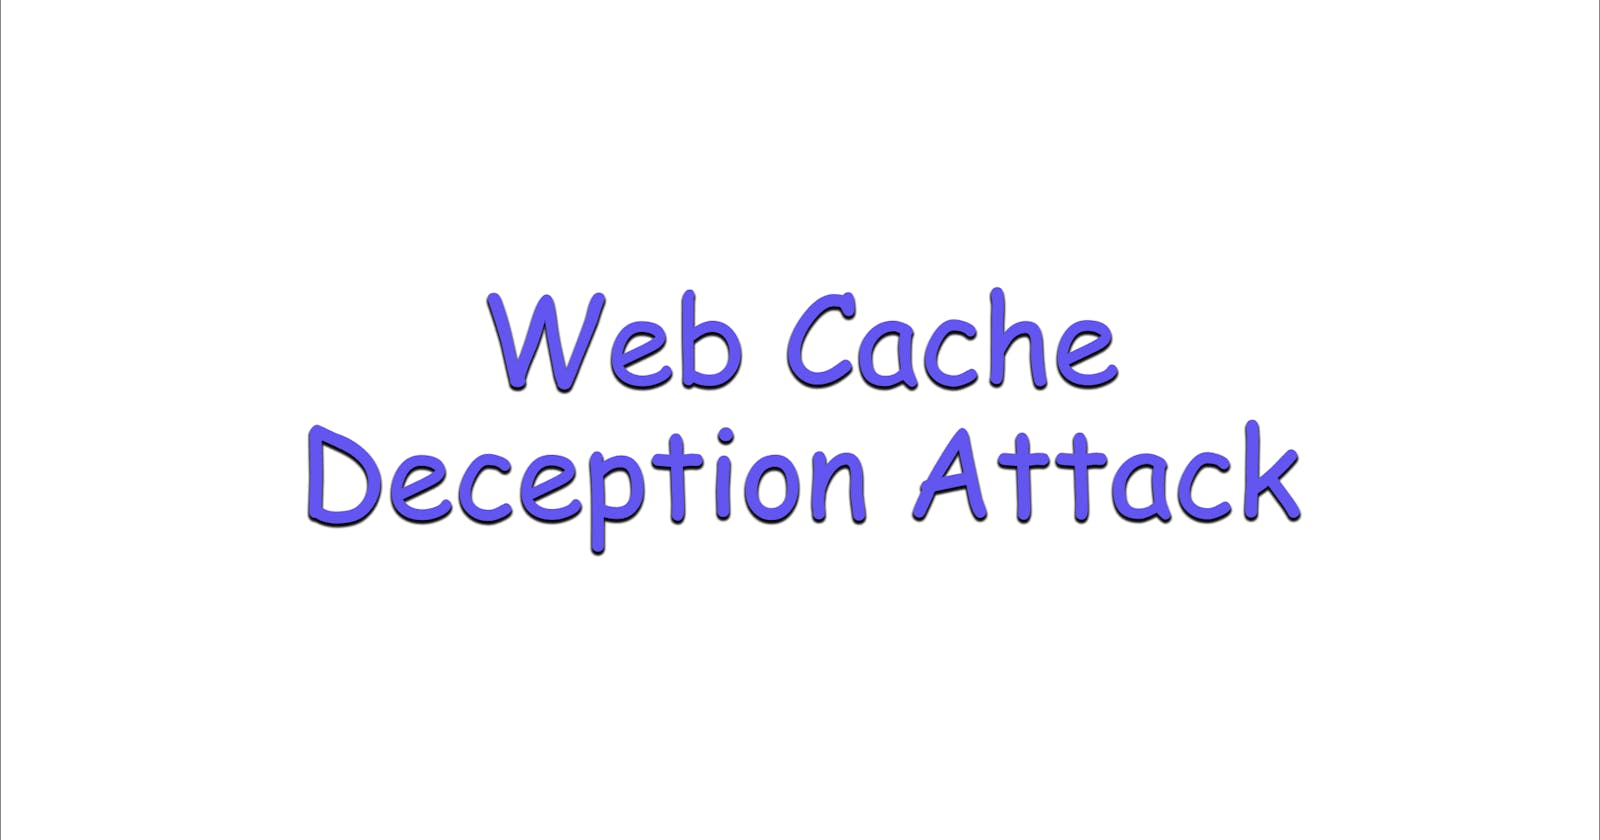 Web Cache Deception Attack